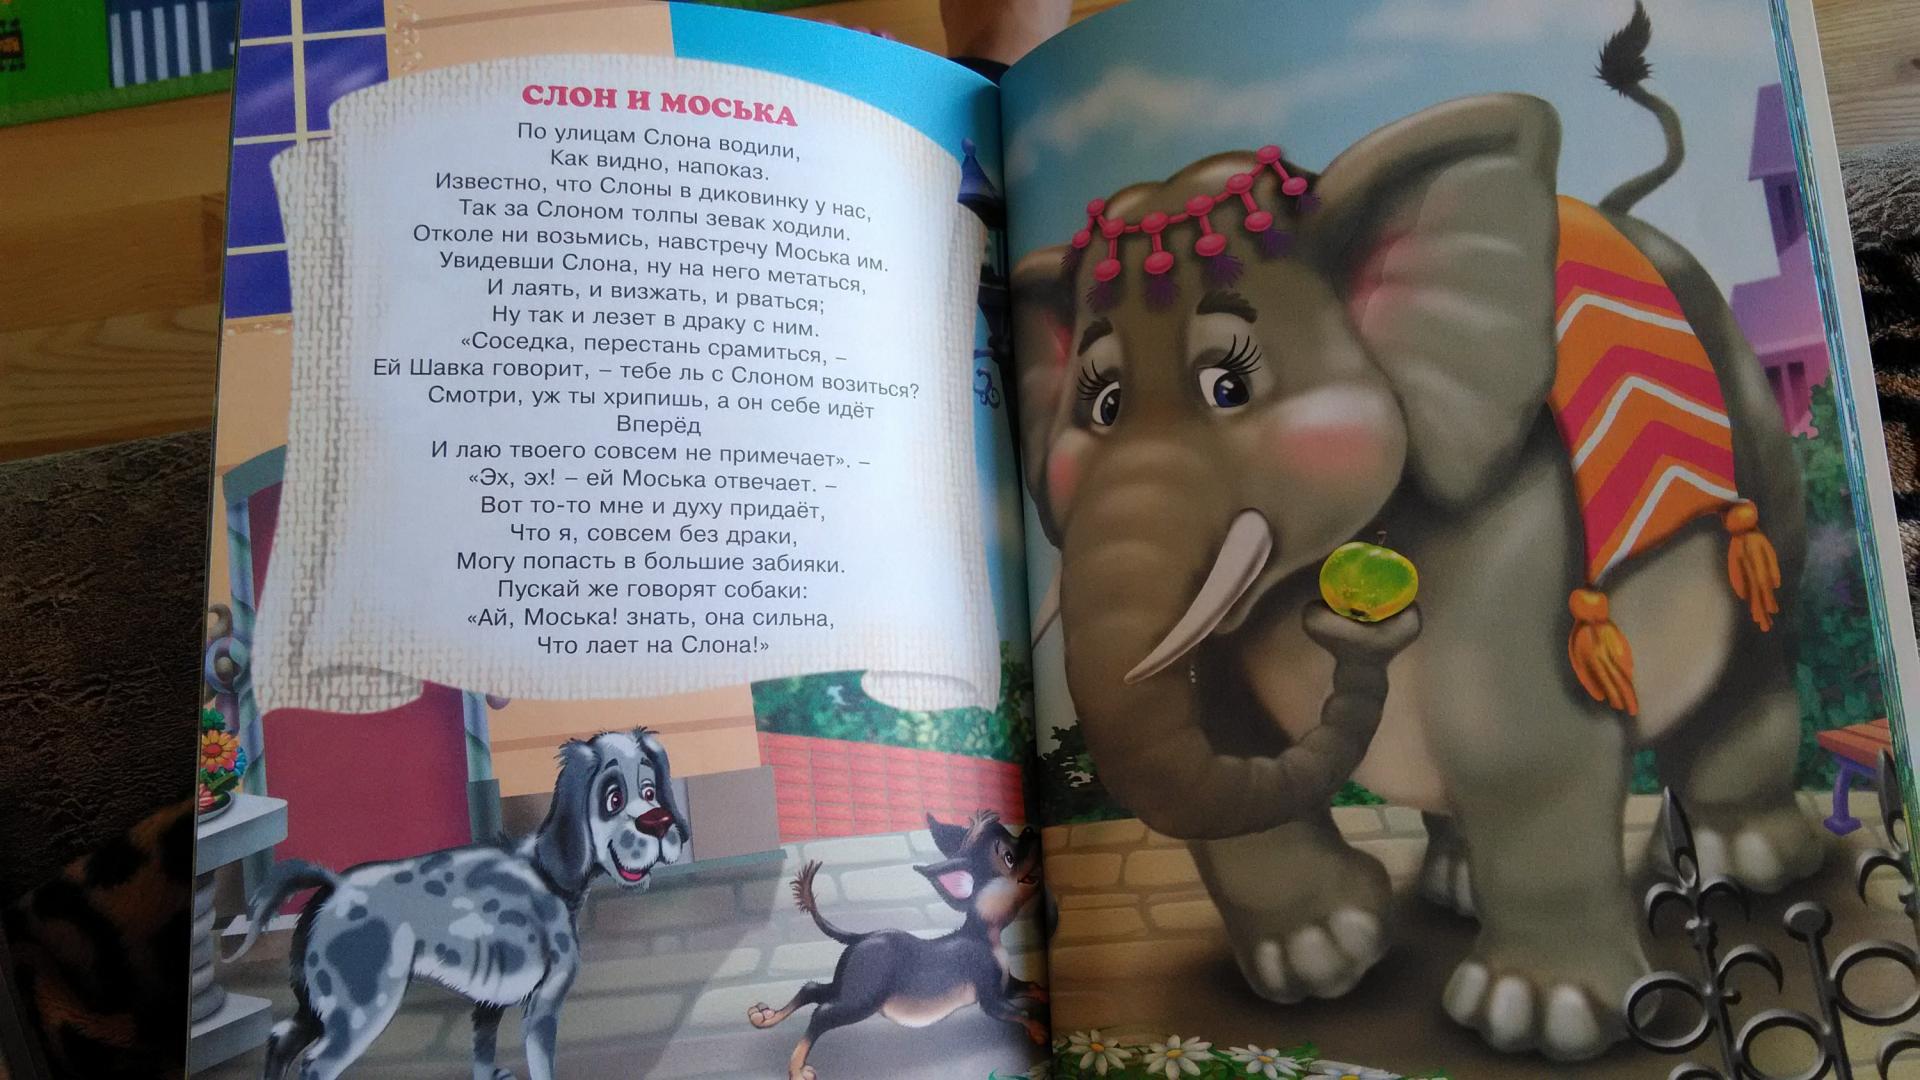 Читательский дневник про слона. По улице слона водили басня Крылова. Басня слон и моська Крылов. Крылов слон и моська текст. Слон и моська басня книга.